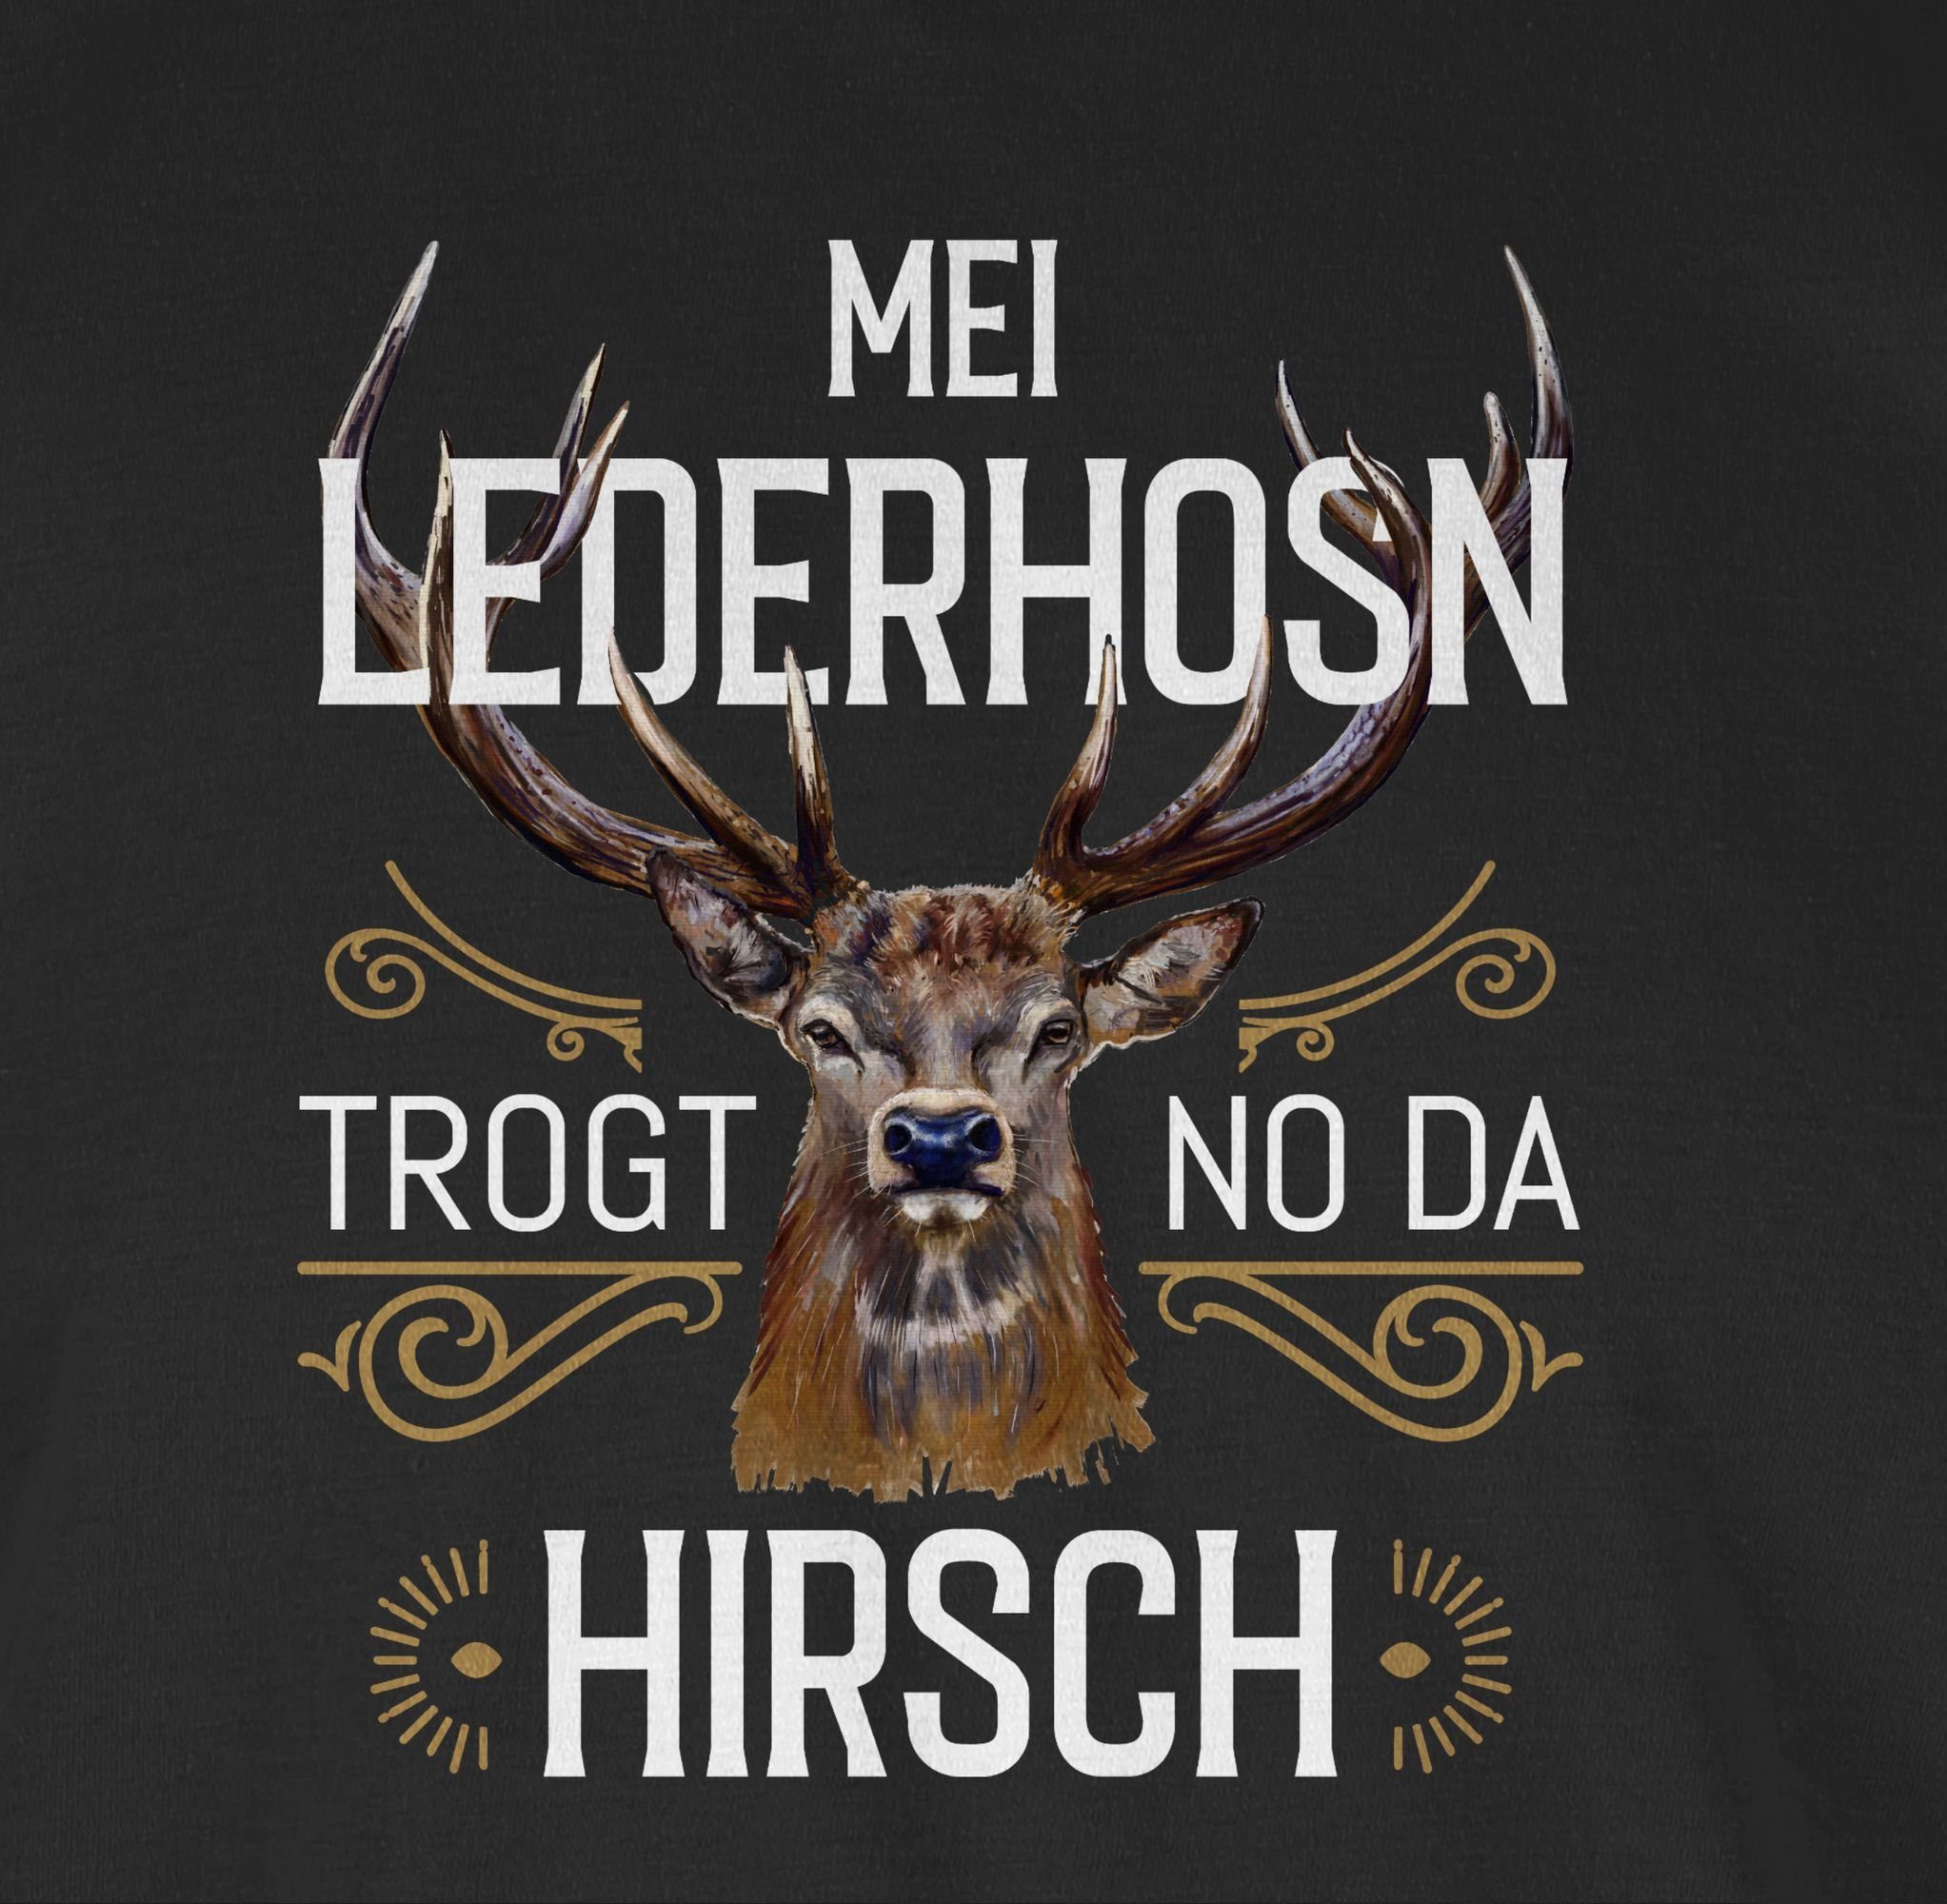 Shirtracer T-Shirt Mei Lederhosn trogt weiß no Hirsch 01 Schwarz für da Oktoberfest Mode braun Herren 